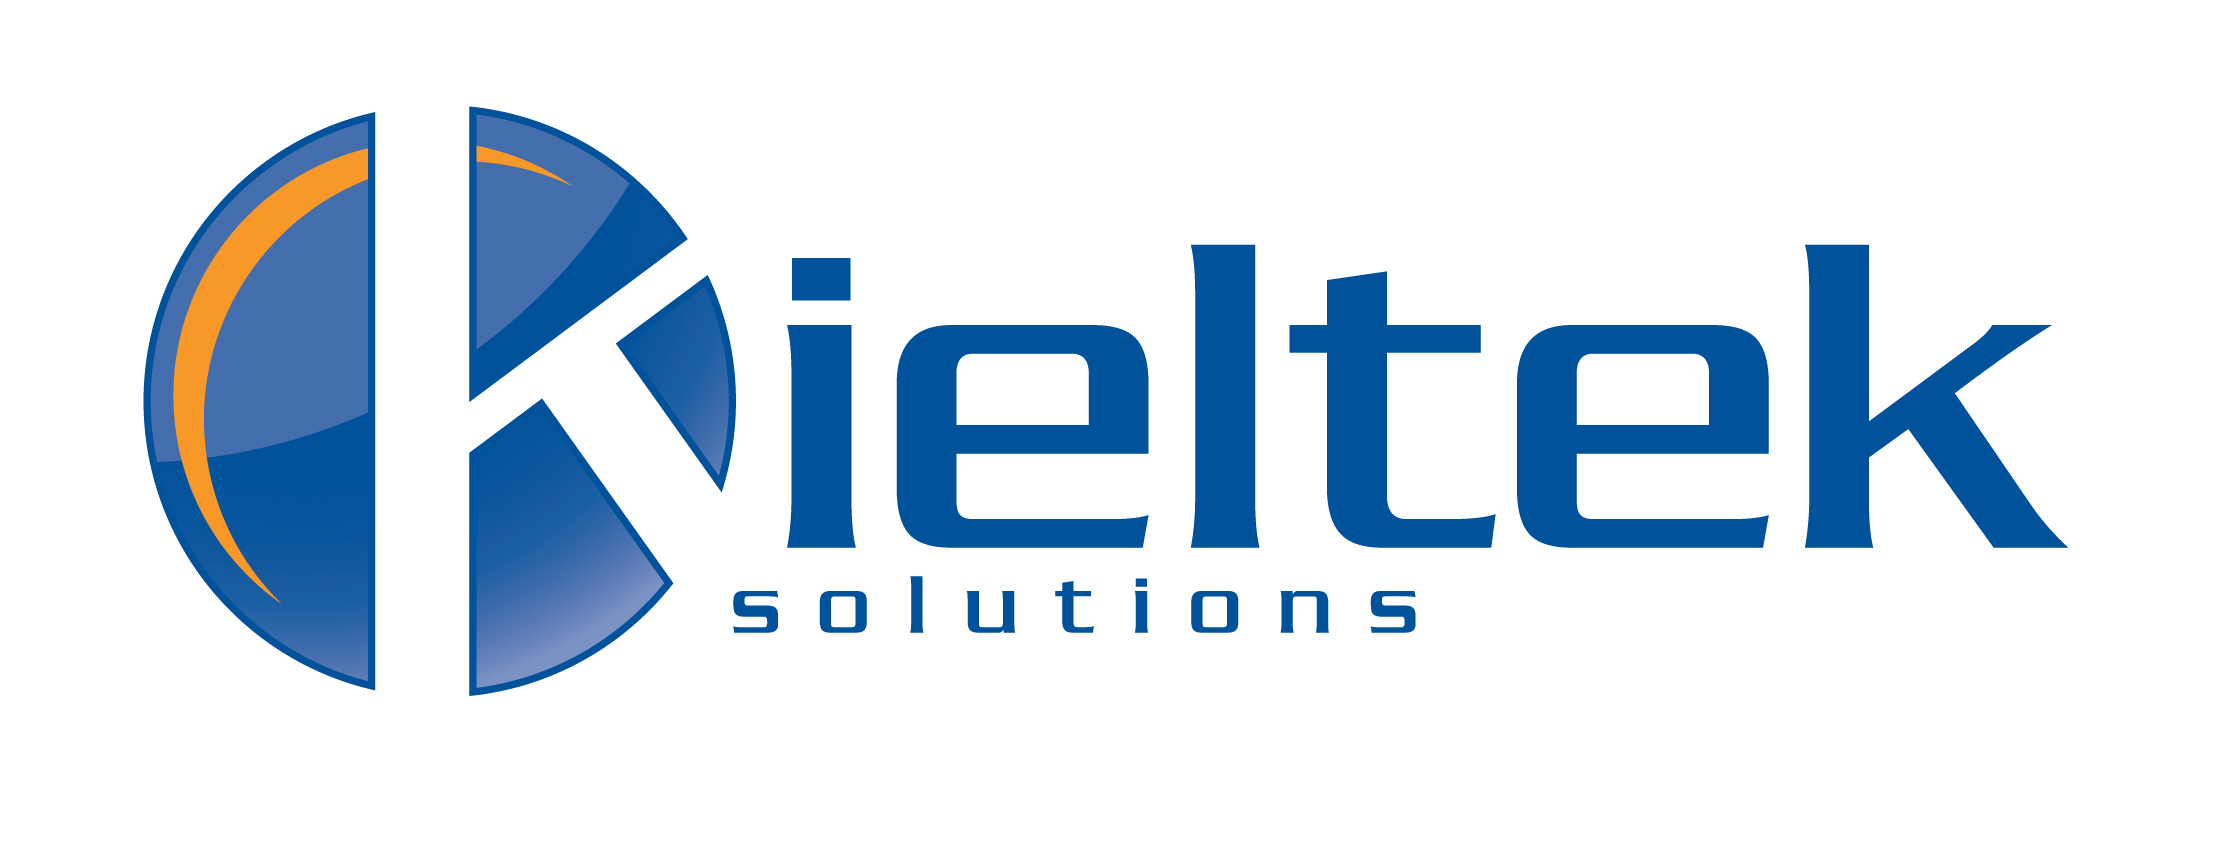 Kieltek Solutions